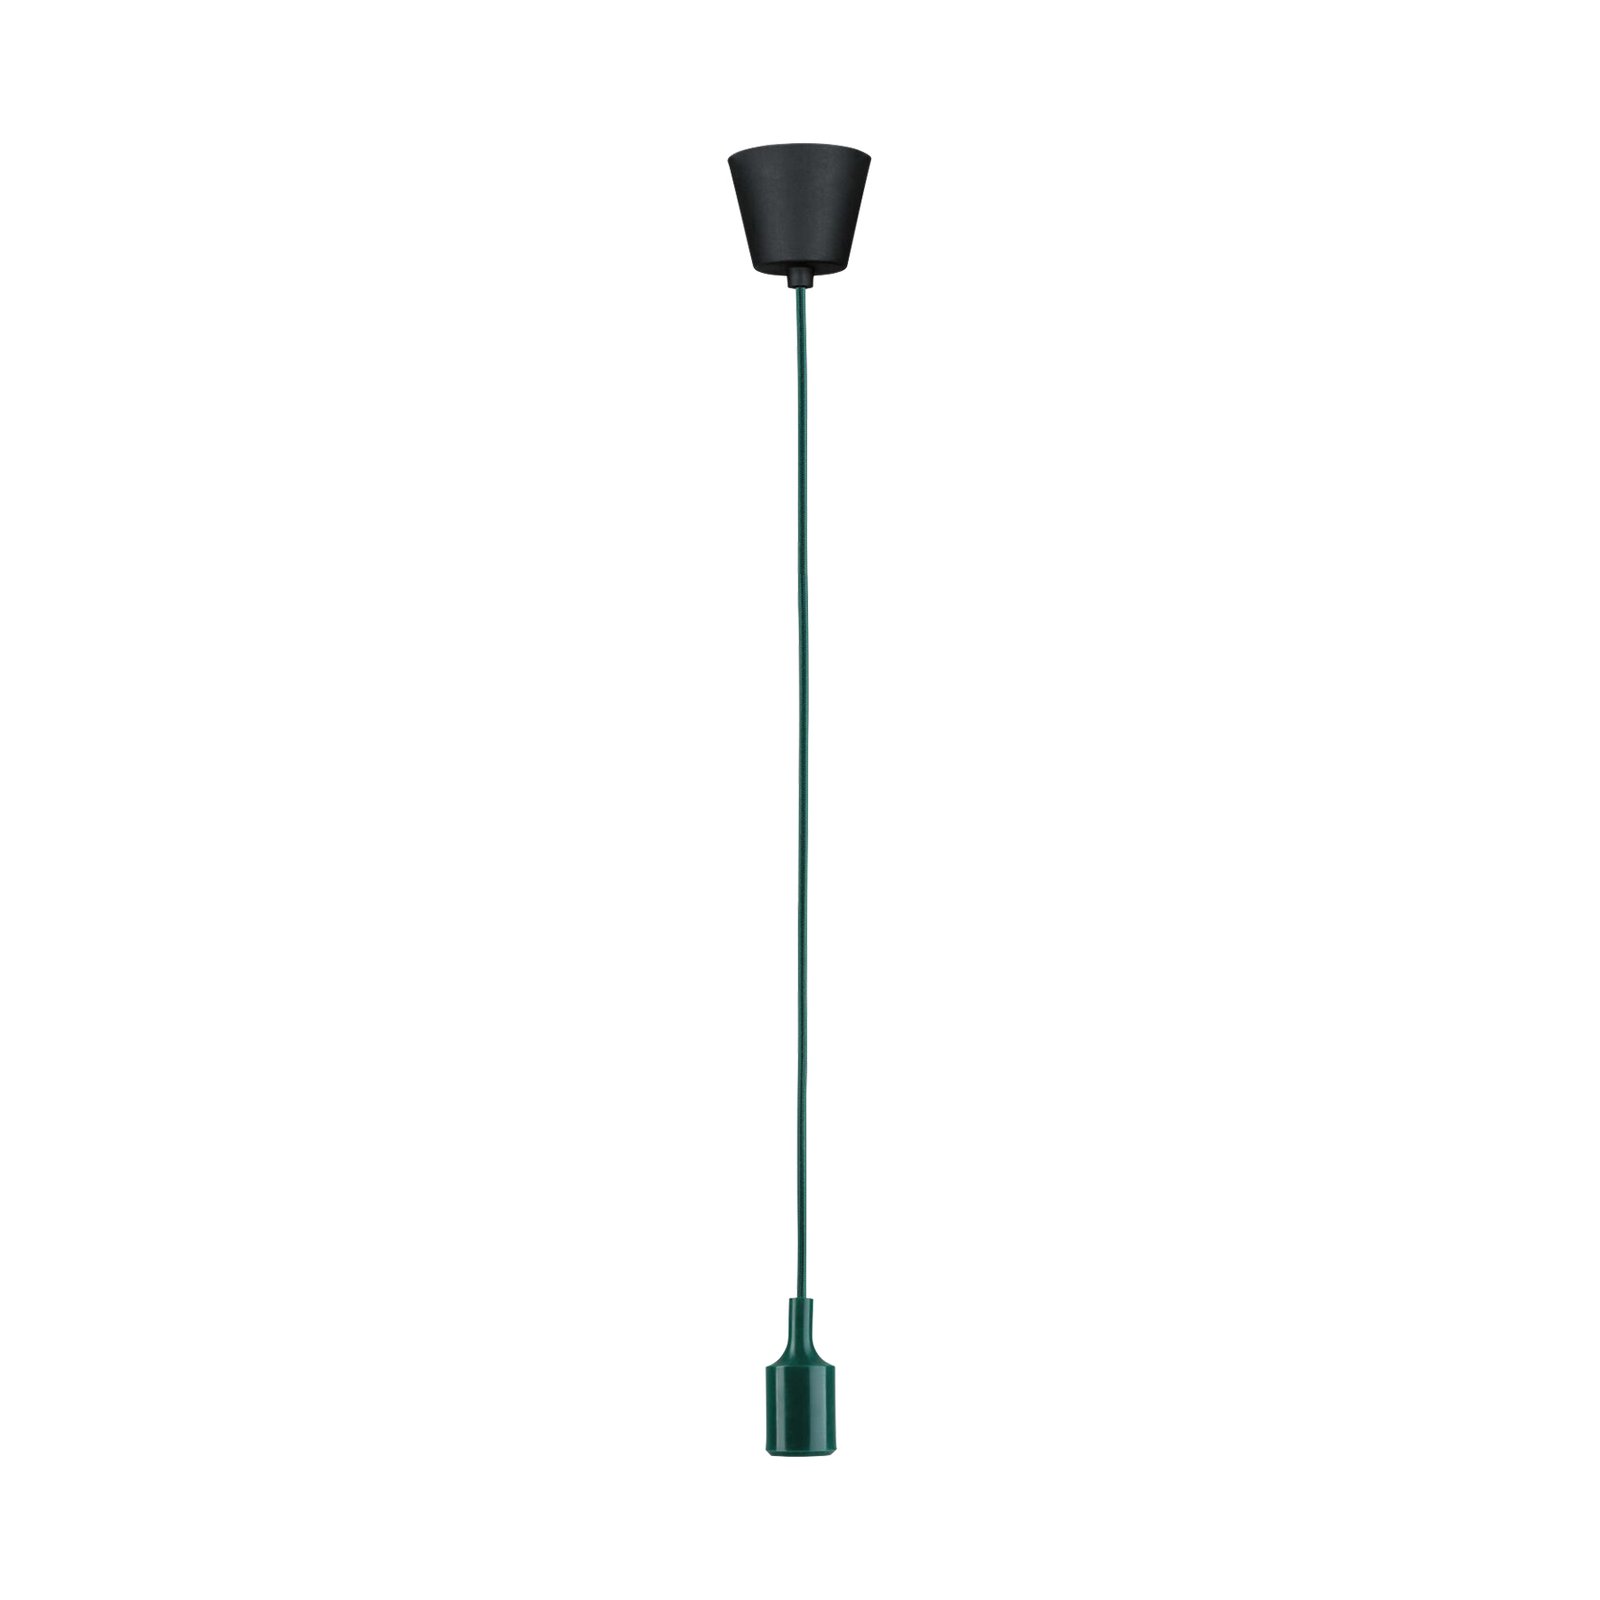 Paulmann Neordic Ketil hanglamp groen/zwart